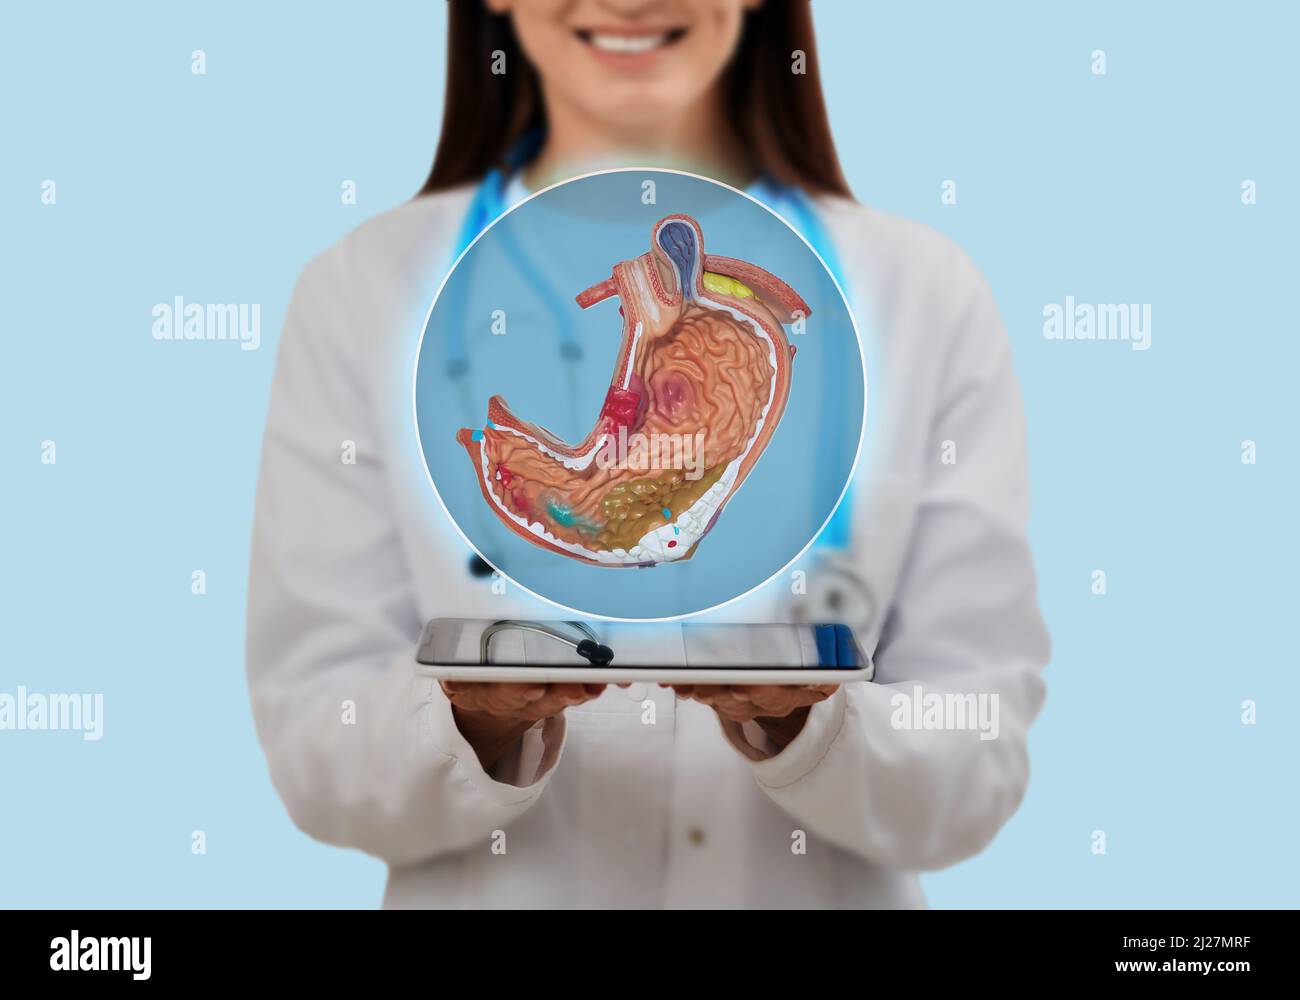 Médico con modelo anatómico virtual de estómago que muestra el concepto de salud estomacal en la atención sanitaria. Diagnóstico y tratamiento de la enfermedad estomacal Foto de stock